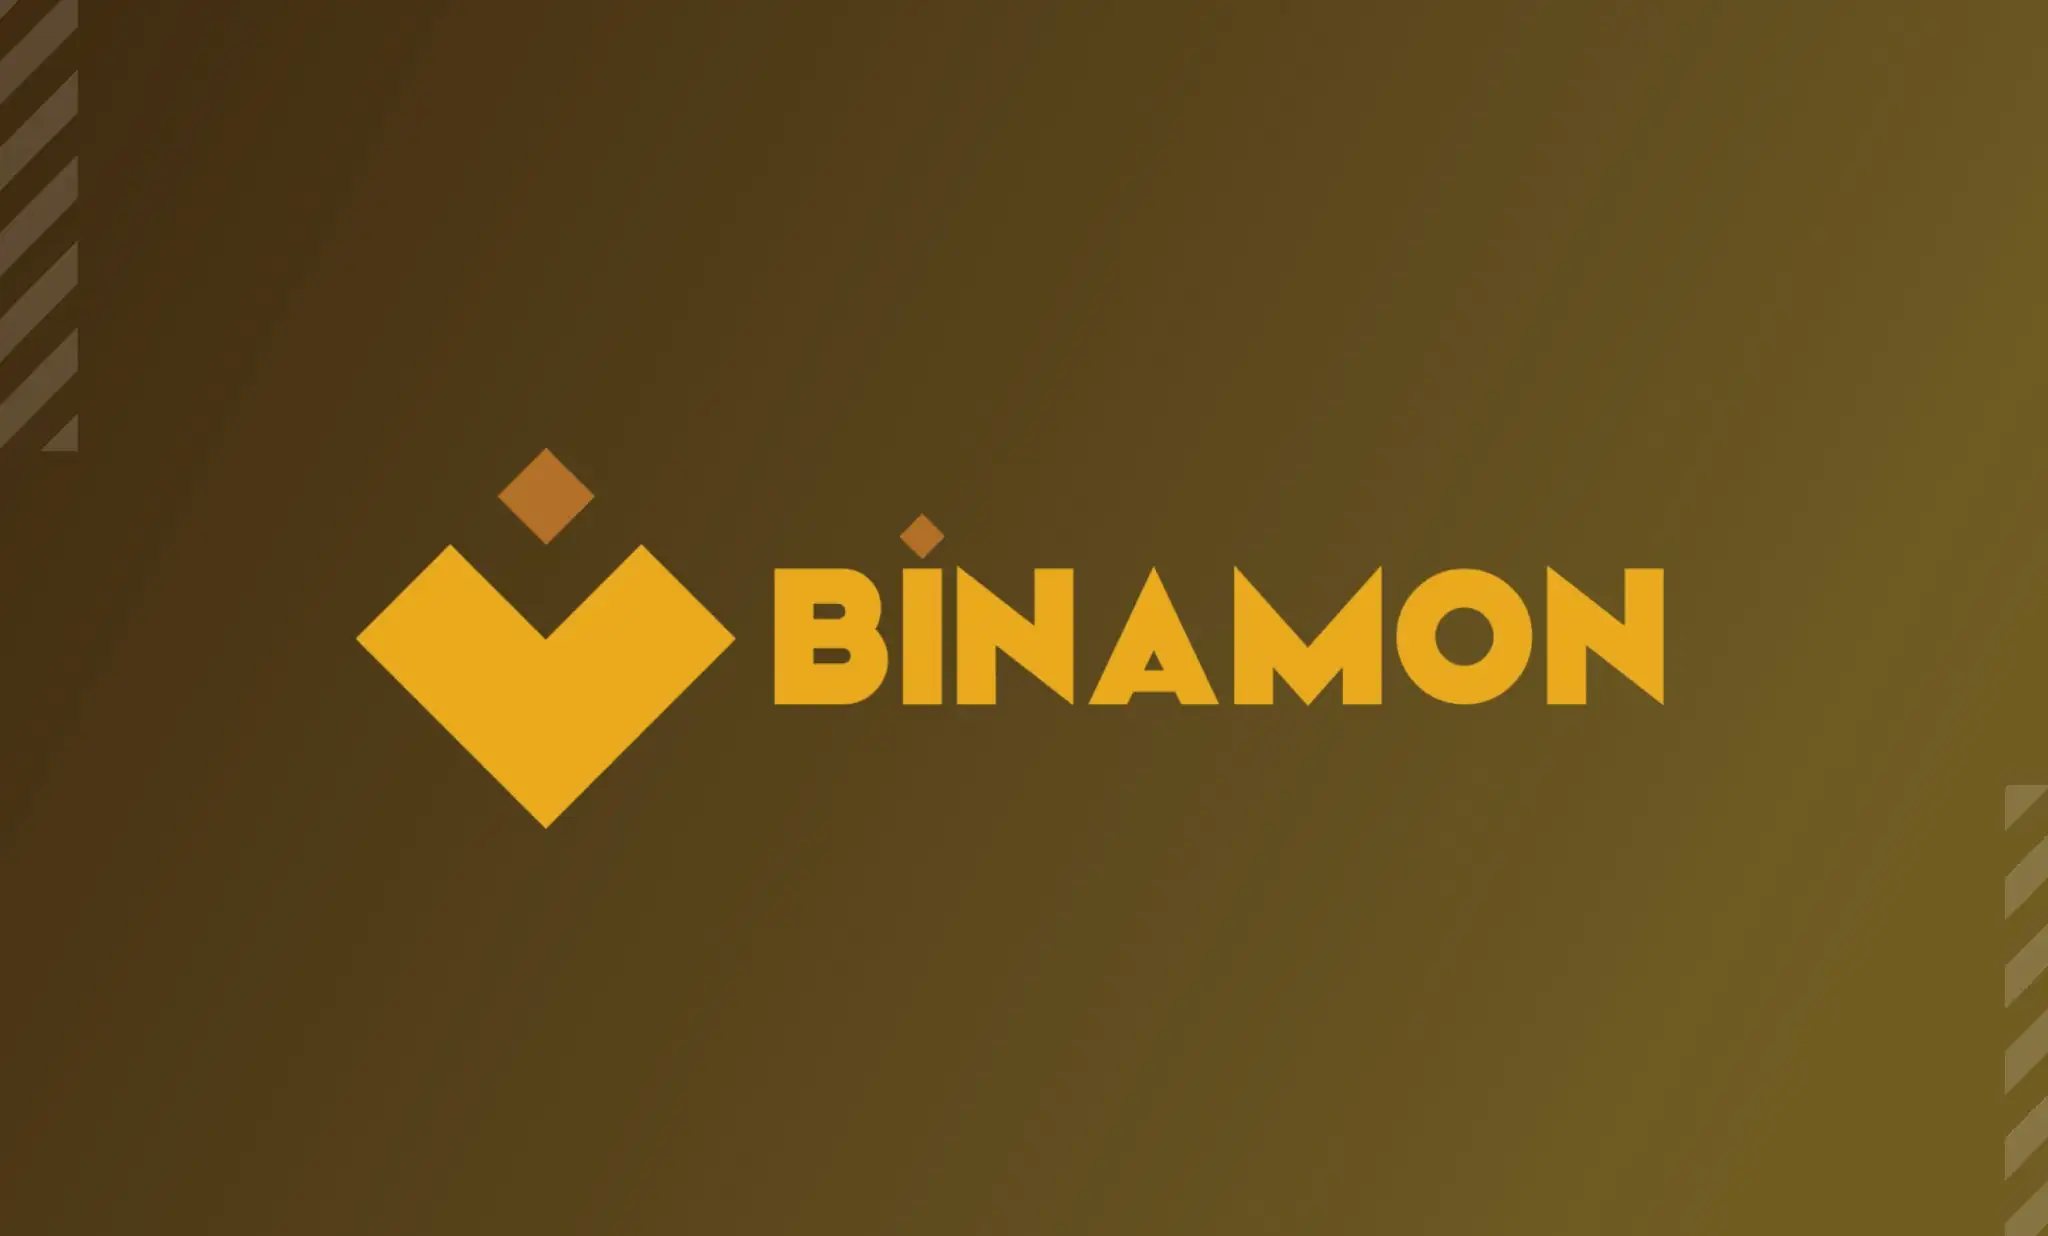 Binamon